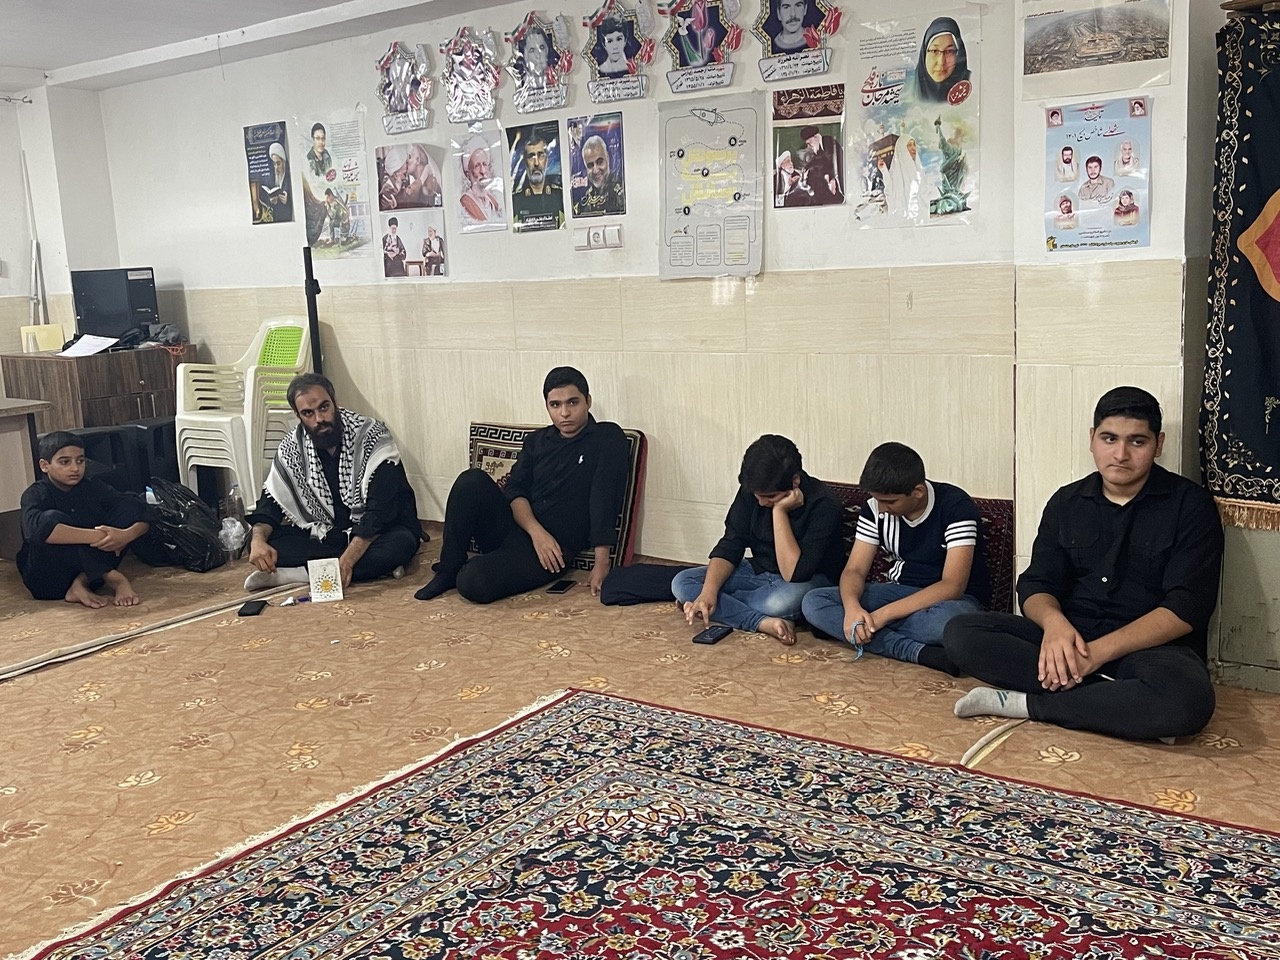 برگزاری دوره آموزشی راویان گردشگری مقاومت در دشتستان بوشهر